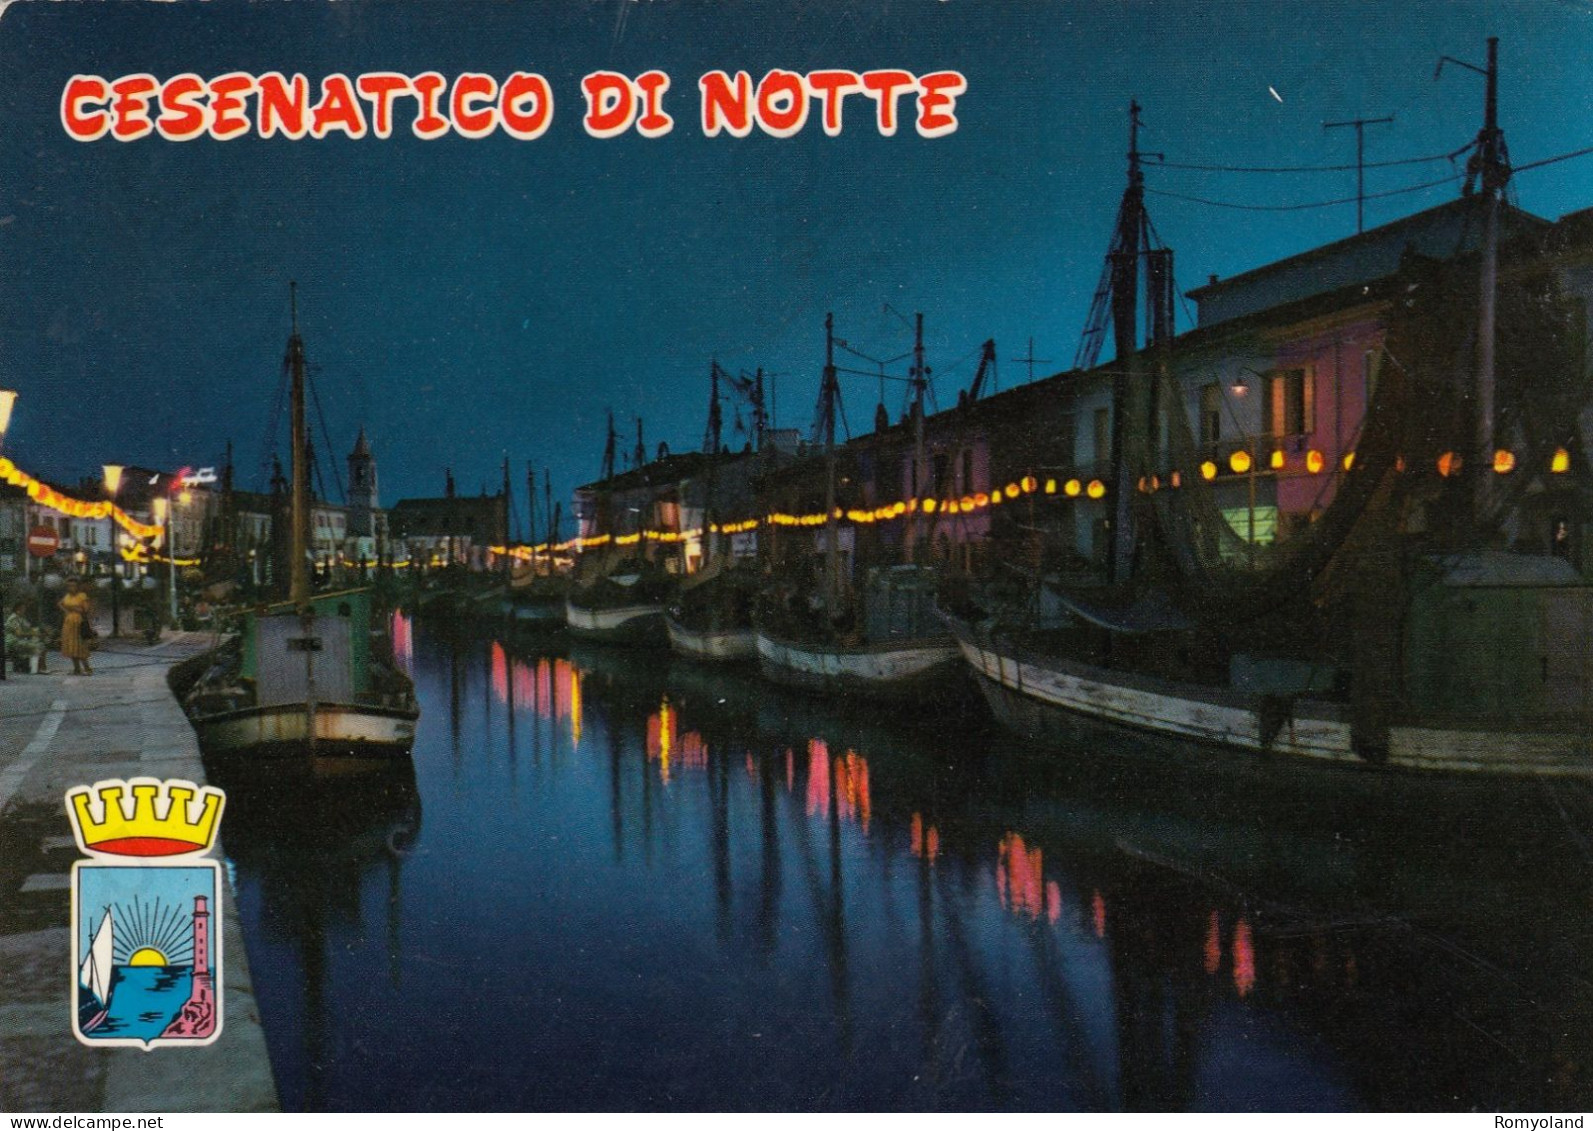 CARTOLINA  CESENATICO,CESENA,EMILIA ROMAGNA-CESENATICO DI NOTTE-PORTO CANALE-NOTTURNO-MARE,BELLA ITALIA,VIAGGIATA 1971 - Cesena